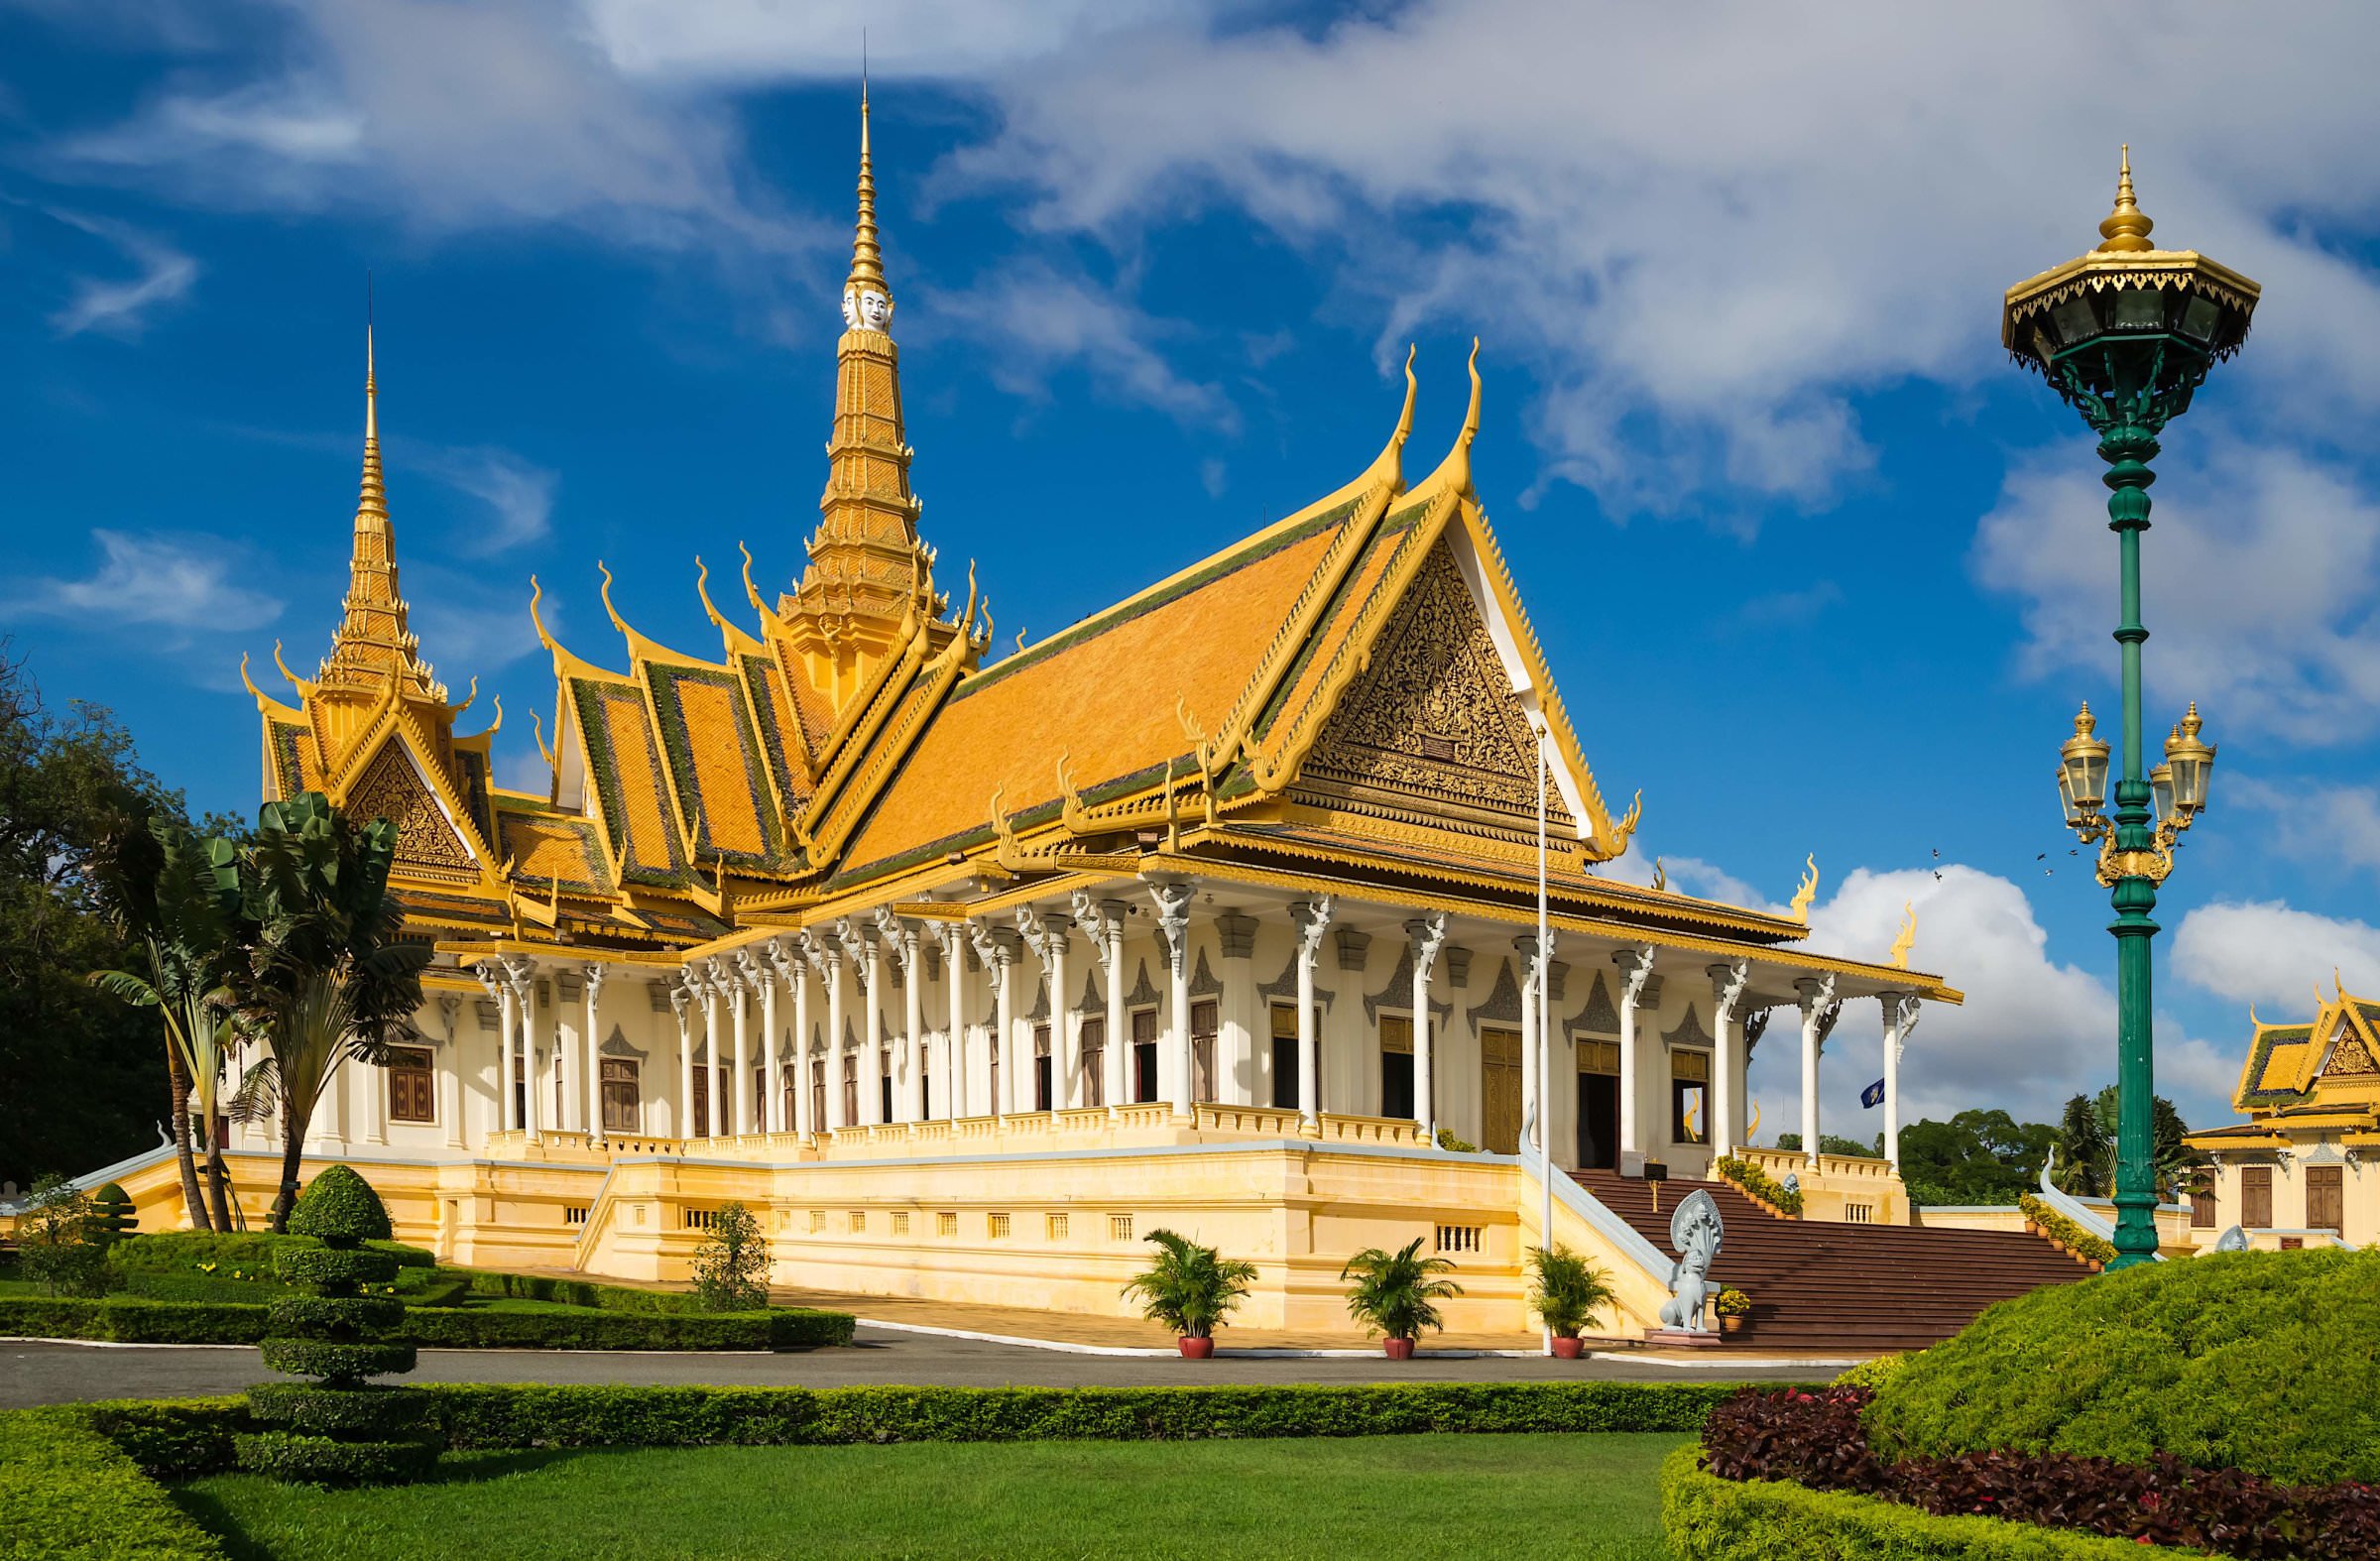 Inexpensive 8 night itinerary to tour Cambodia.